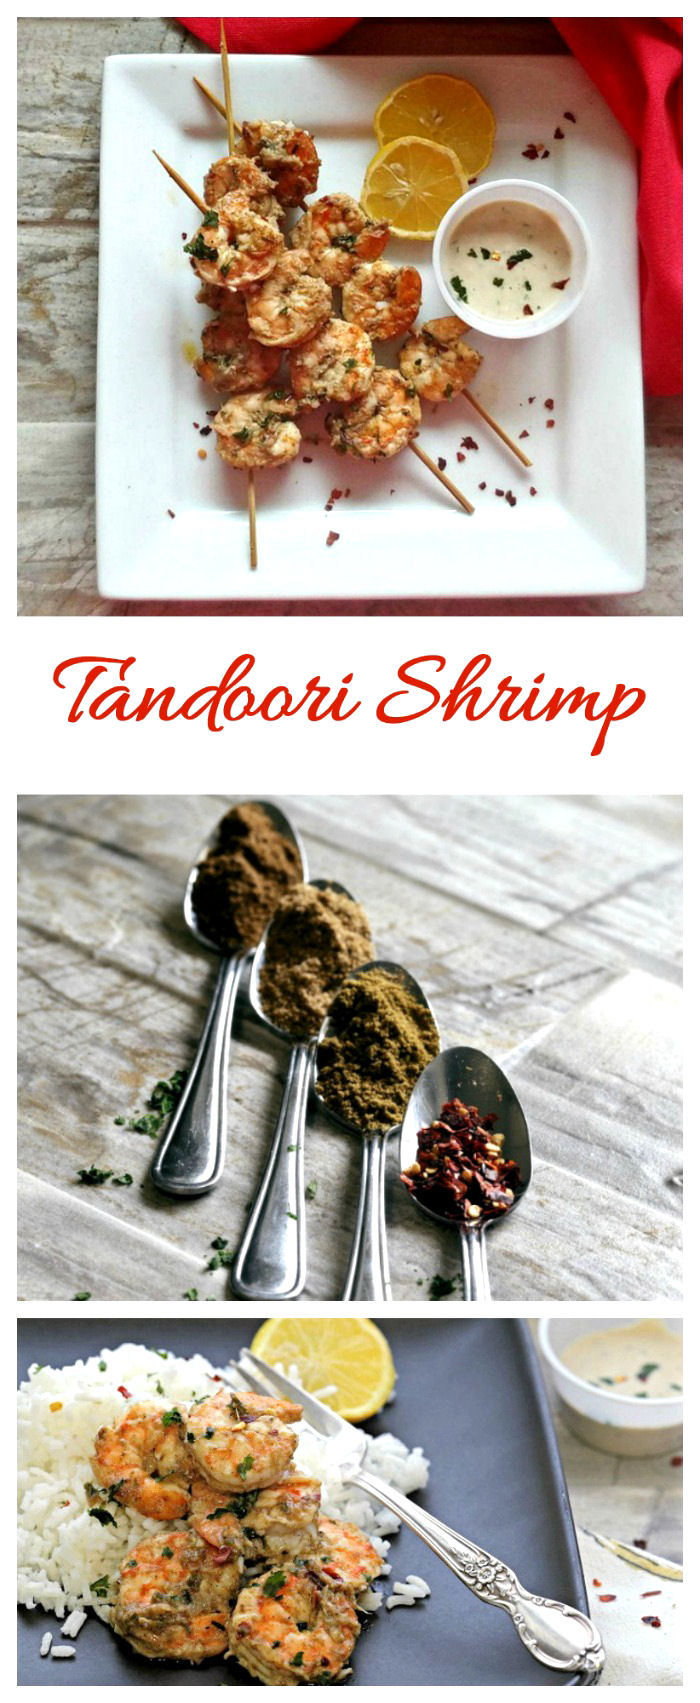 Crevettes Tandoori aux épices indiennes - Recette facile et piquante (sans gluten - Whole30 - Paléo)